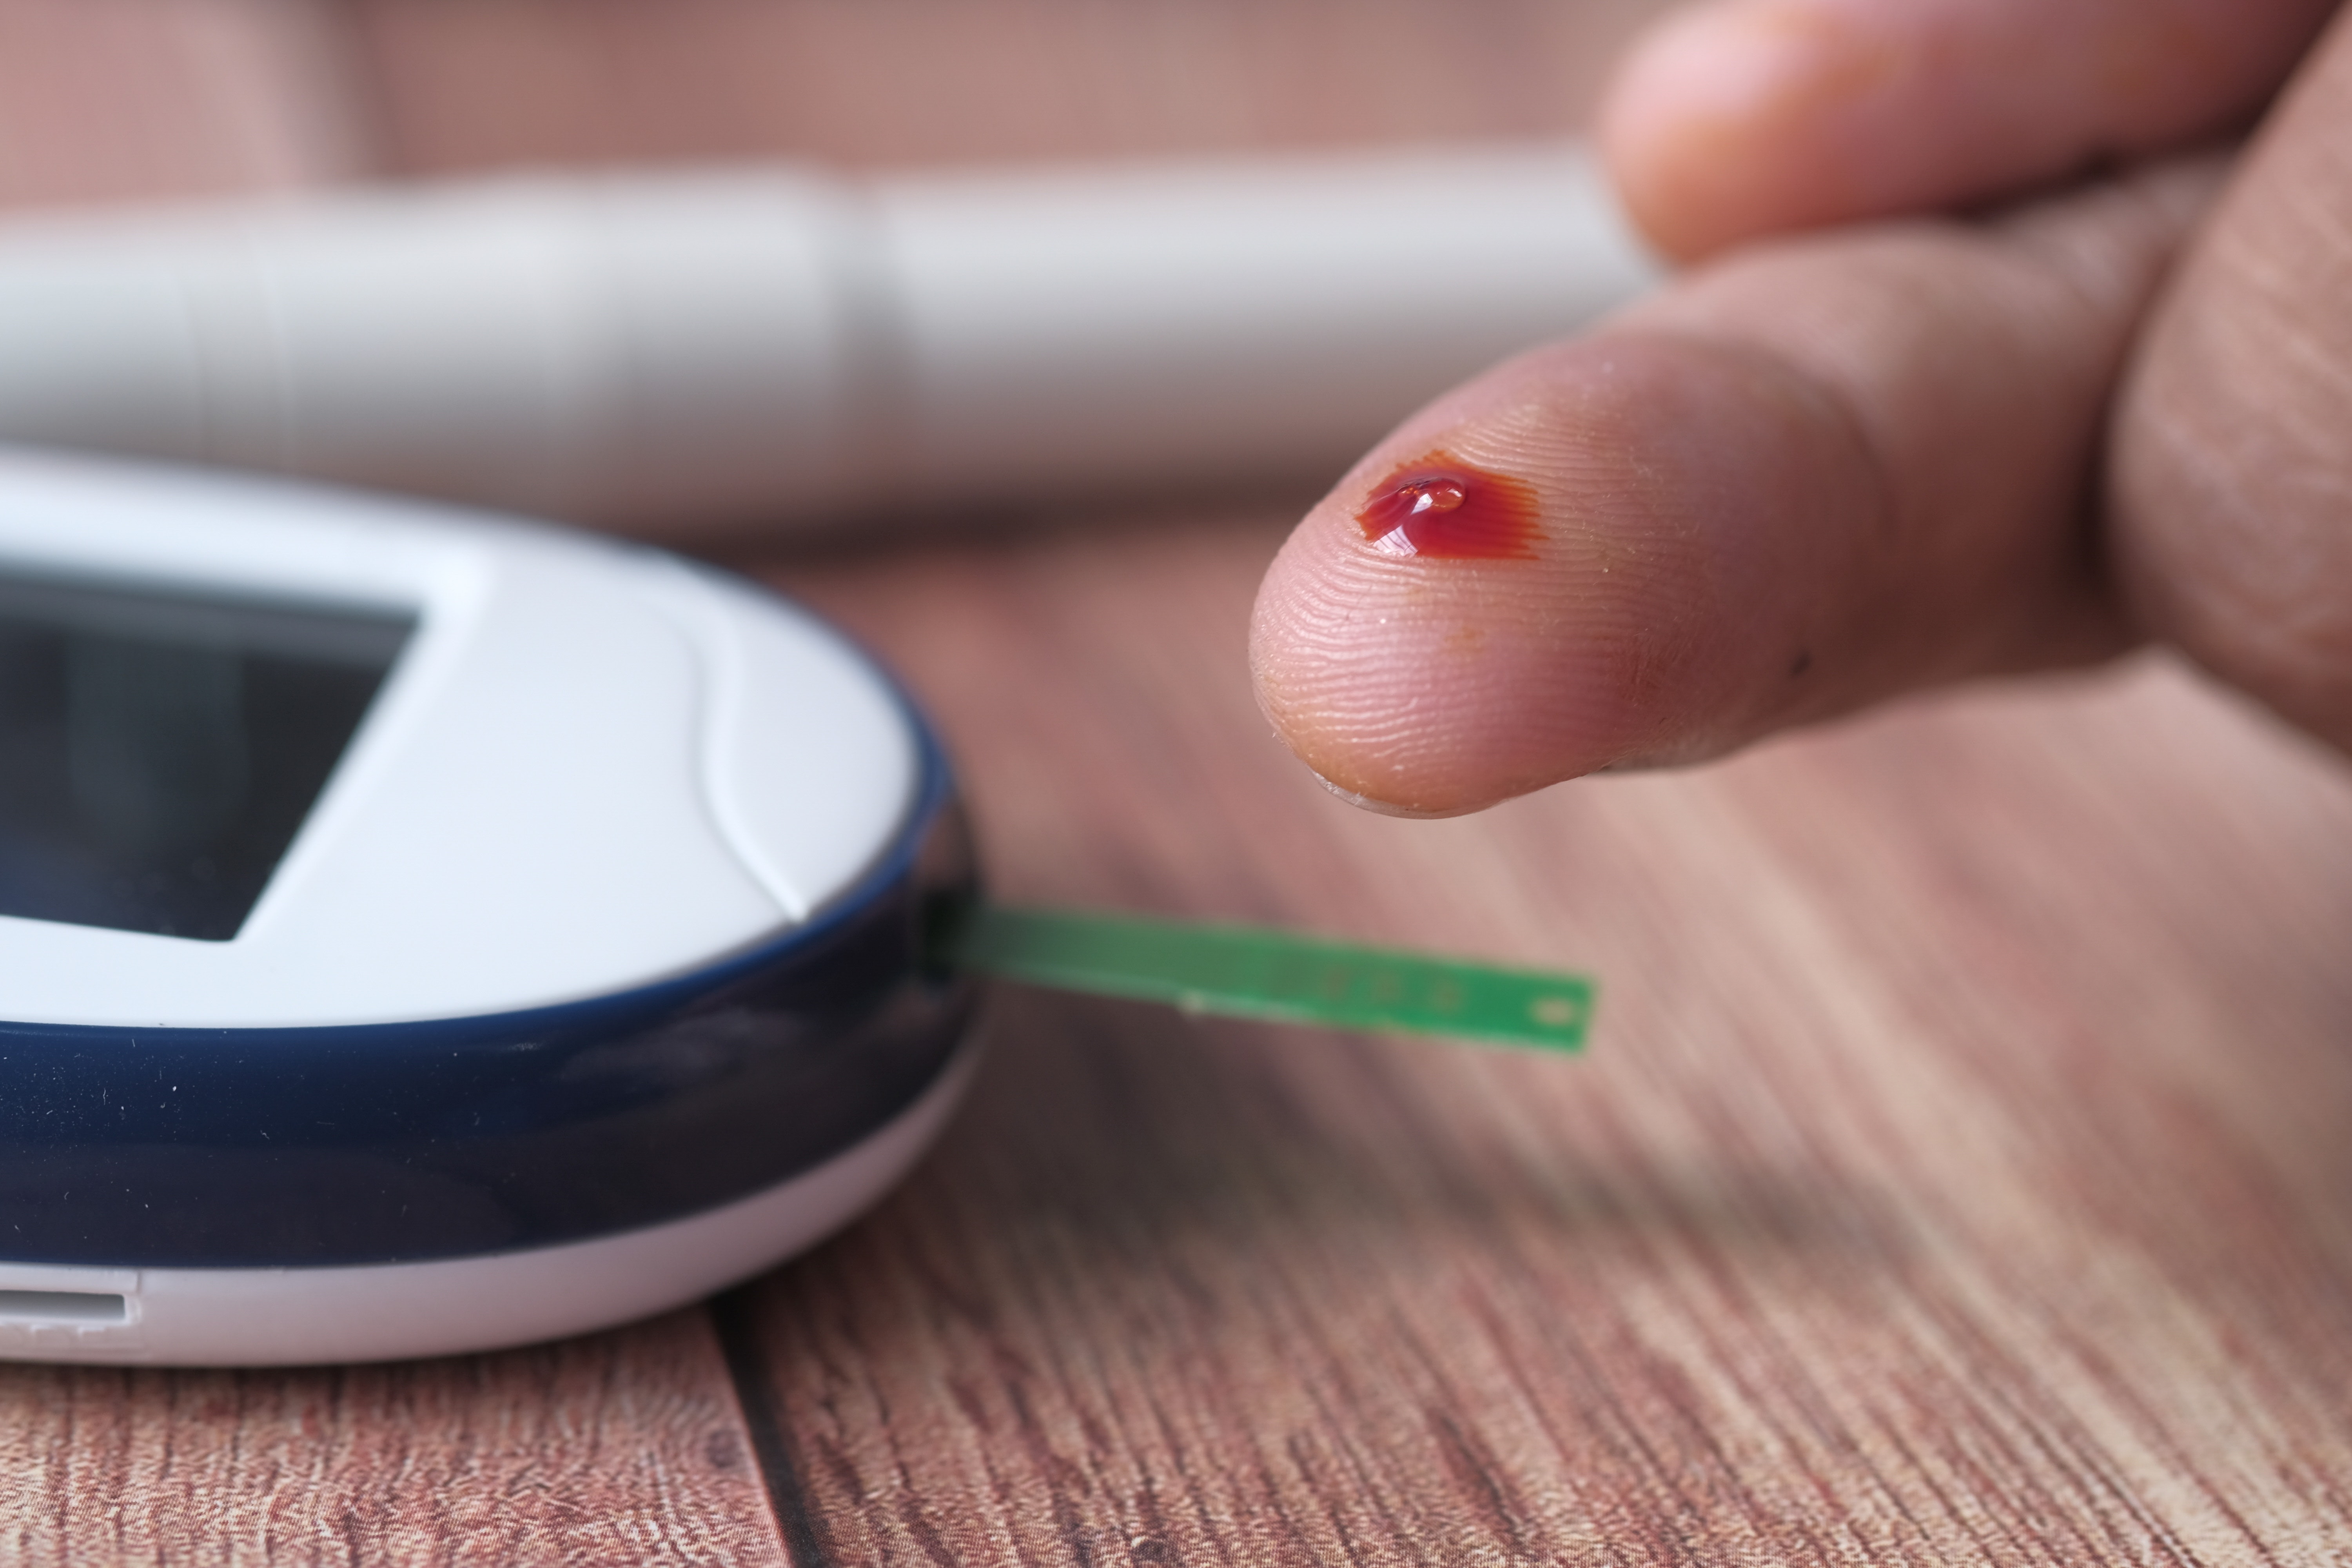  عقار إنقاص الوزن "المعجزة" قد يخلص مرضى السكري من الحقن اليومي للإنسولين (بيكسيلز)